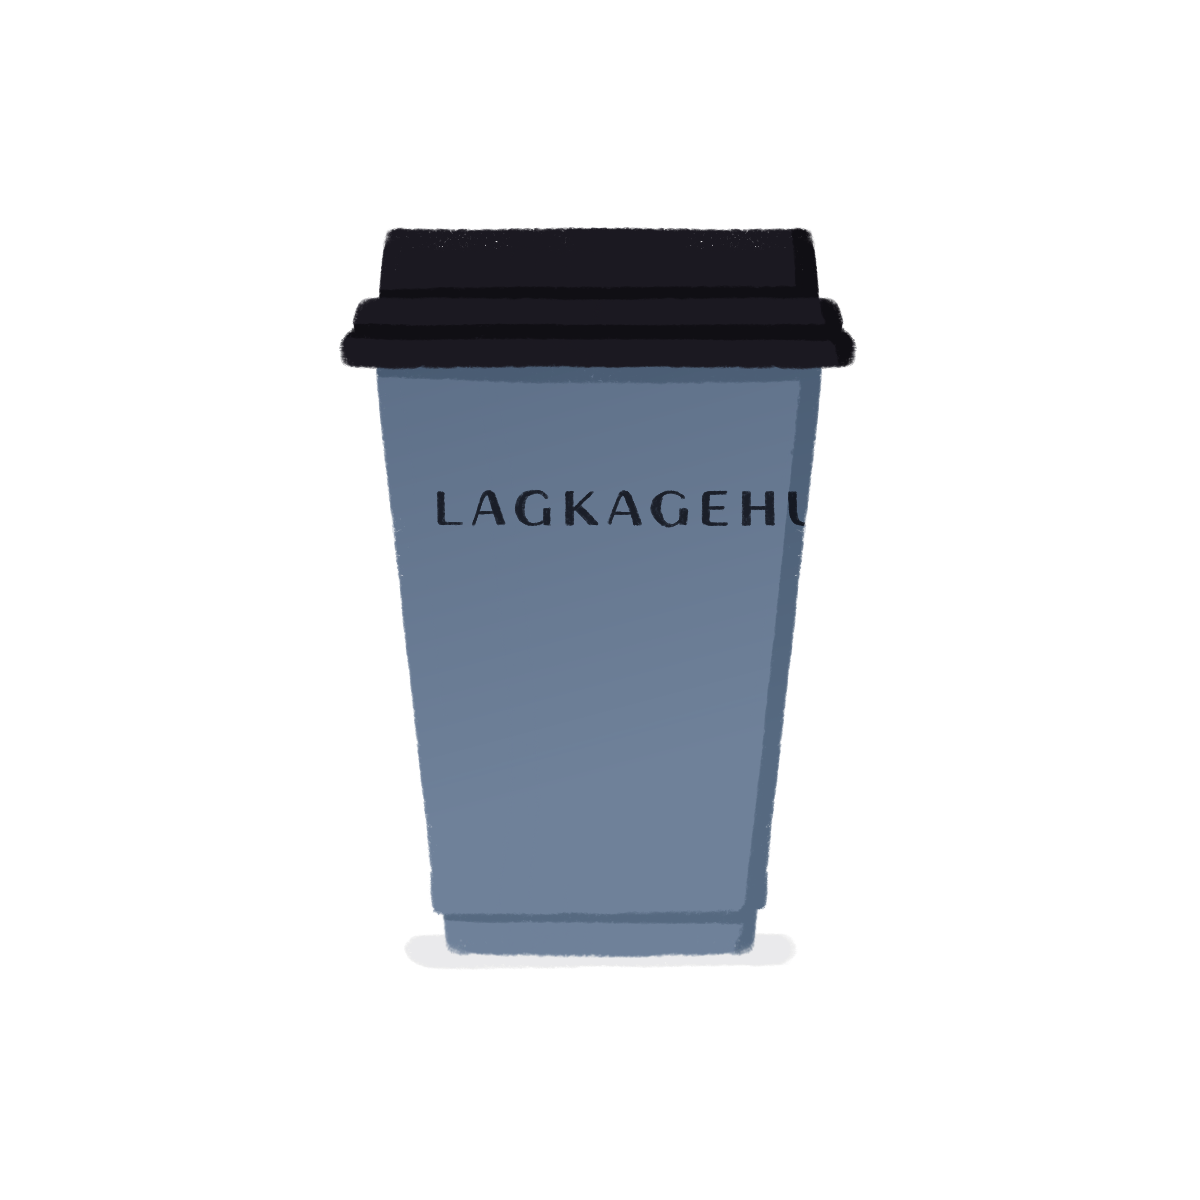 Lagkagehuset coffee cup